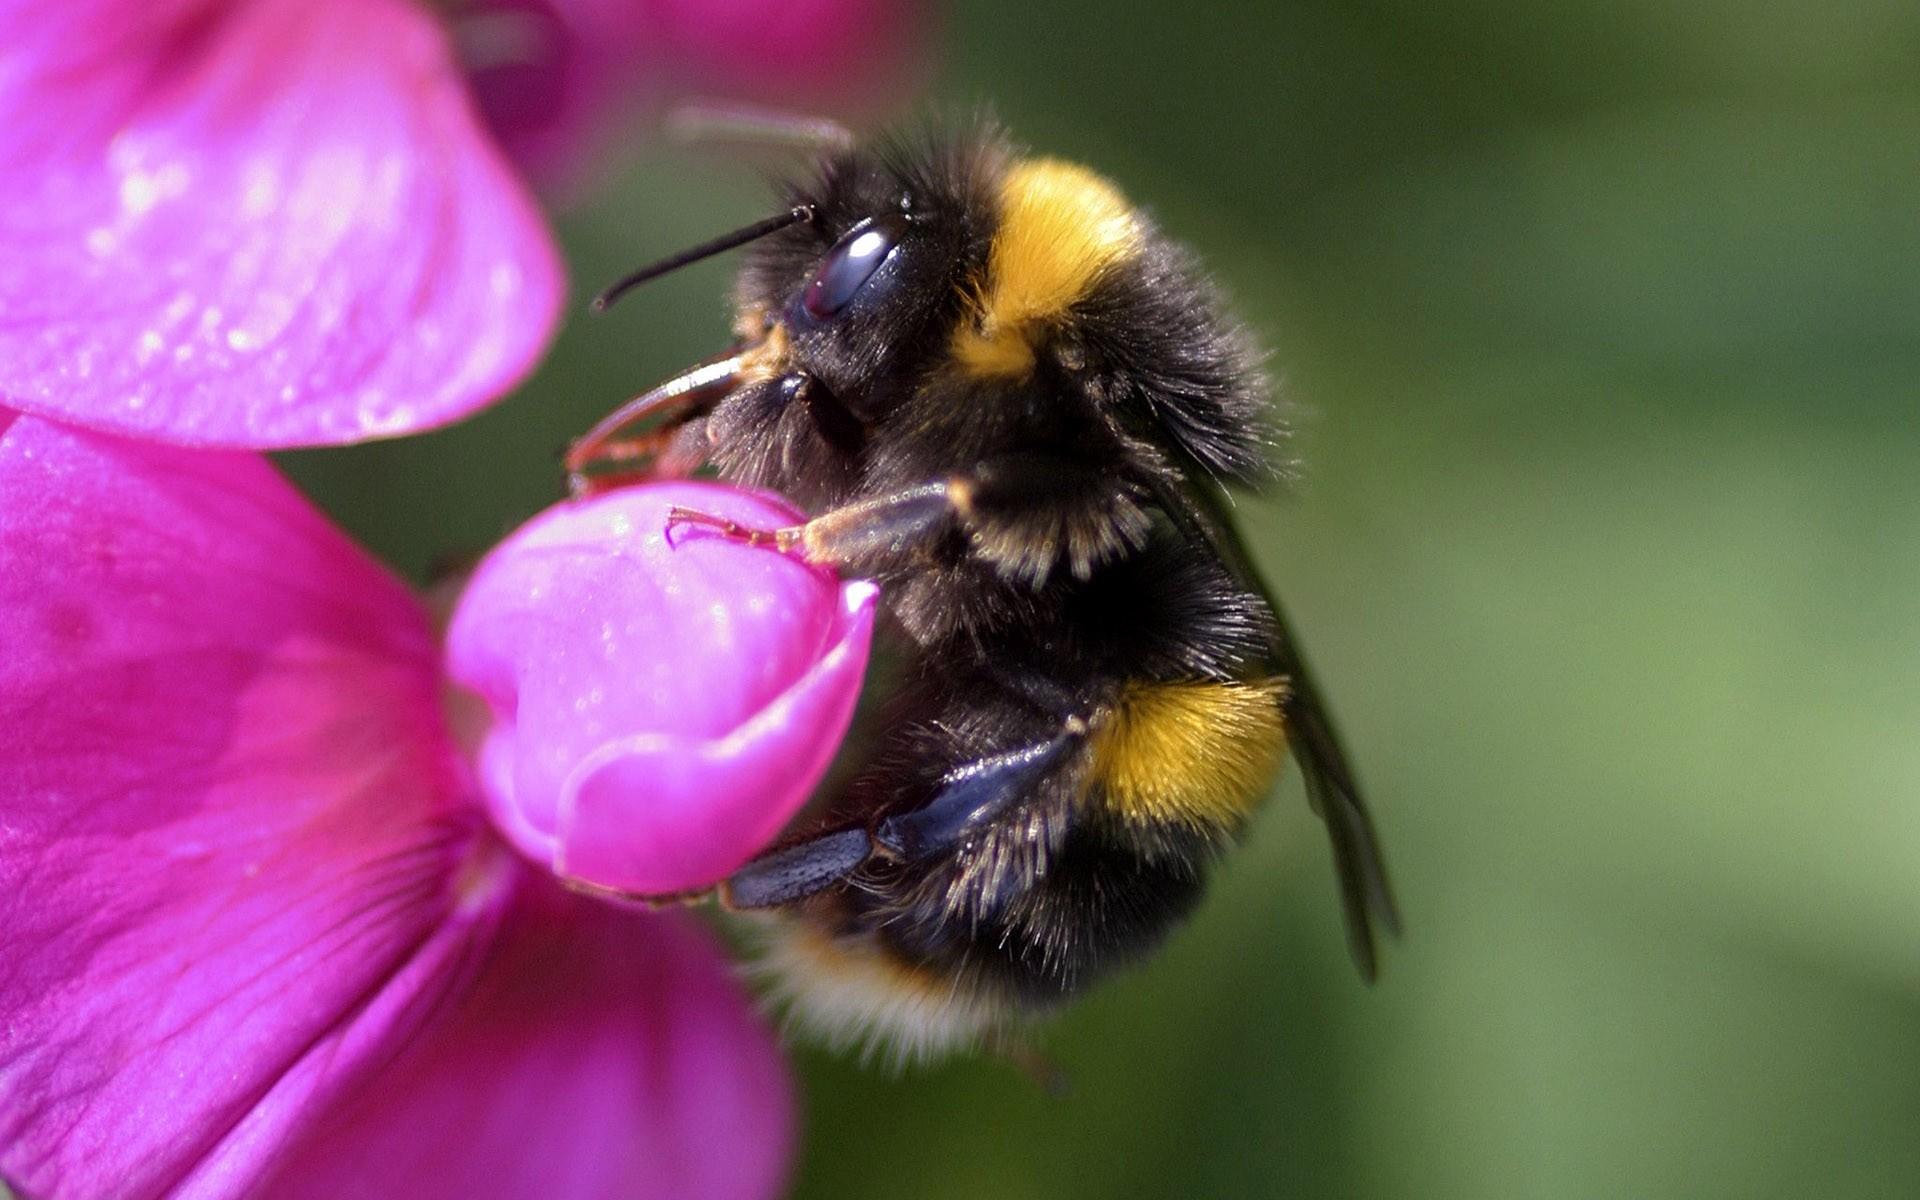 高清蜜蜂采蜜时拍摄的图片大全11